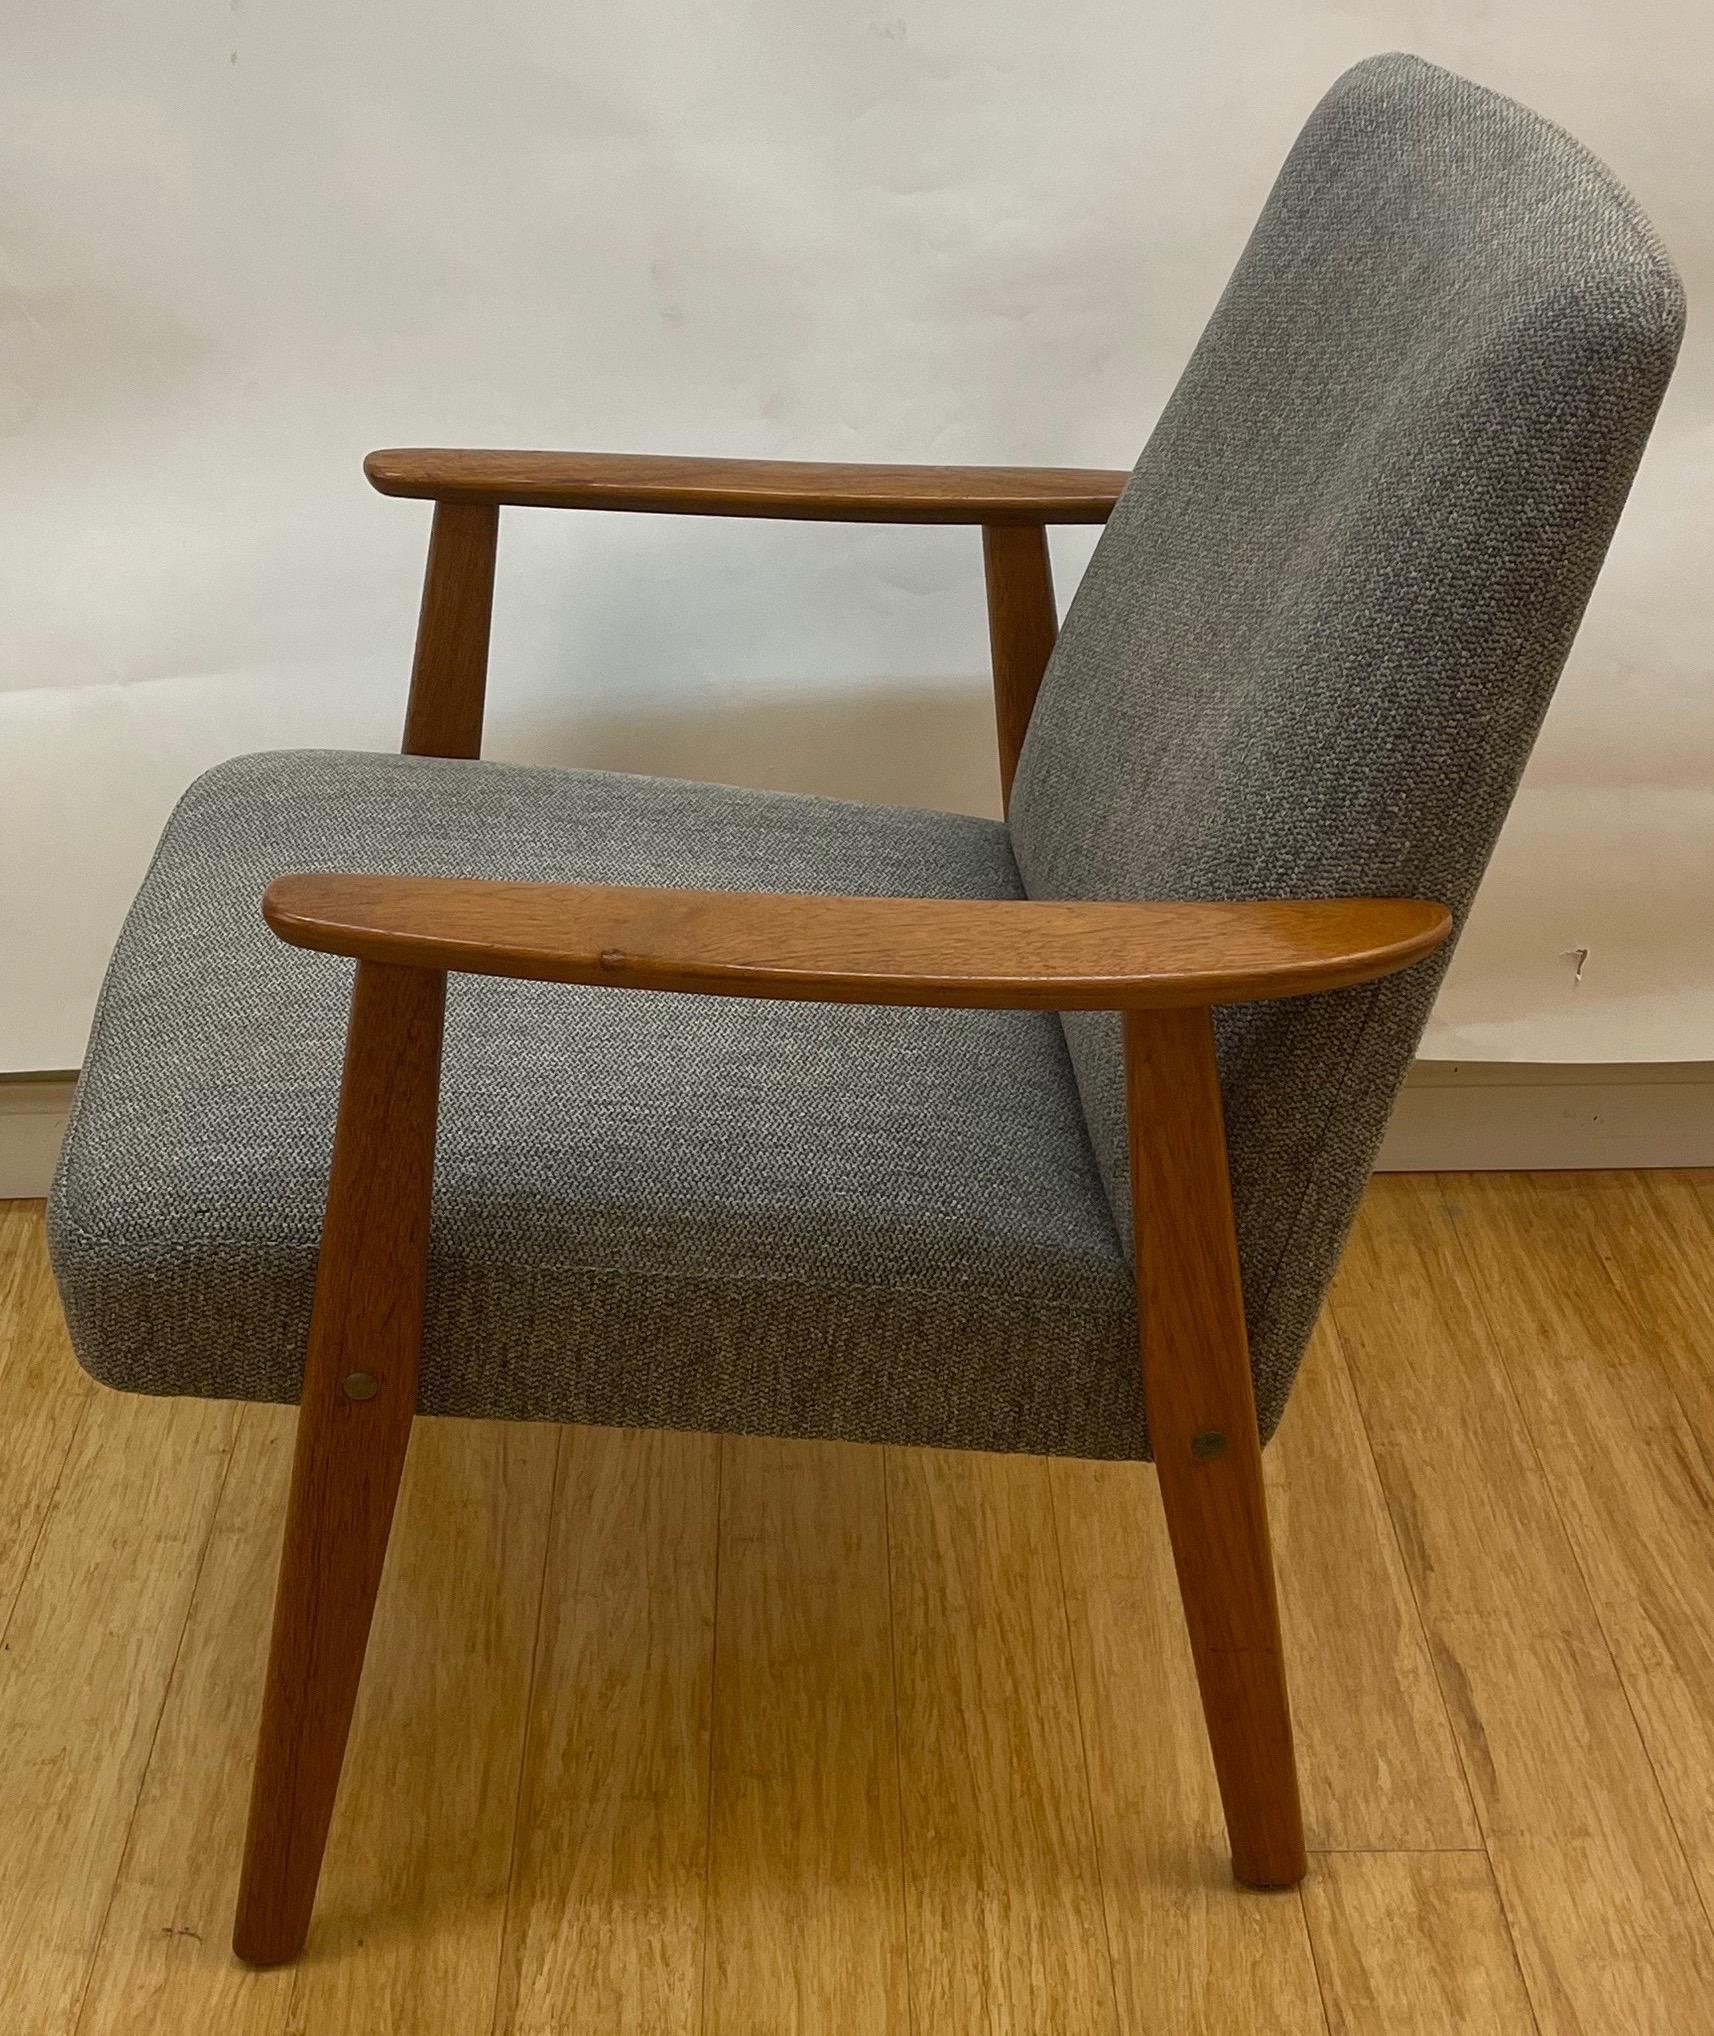 Diese eleganten Stühle sind perfekt proportioniert und entsprechen dem minimalistischen Stil der Jahrhundertmitte.  Sie sind leicht, aber aus Teakholz - einem starken tropischen Hartholz - gefertigt und sowohl im Sitz als auch im Rücken gefedert und